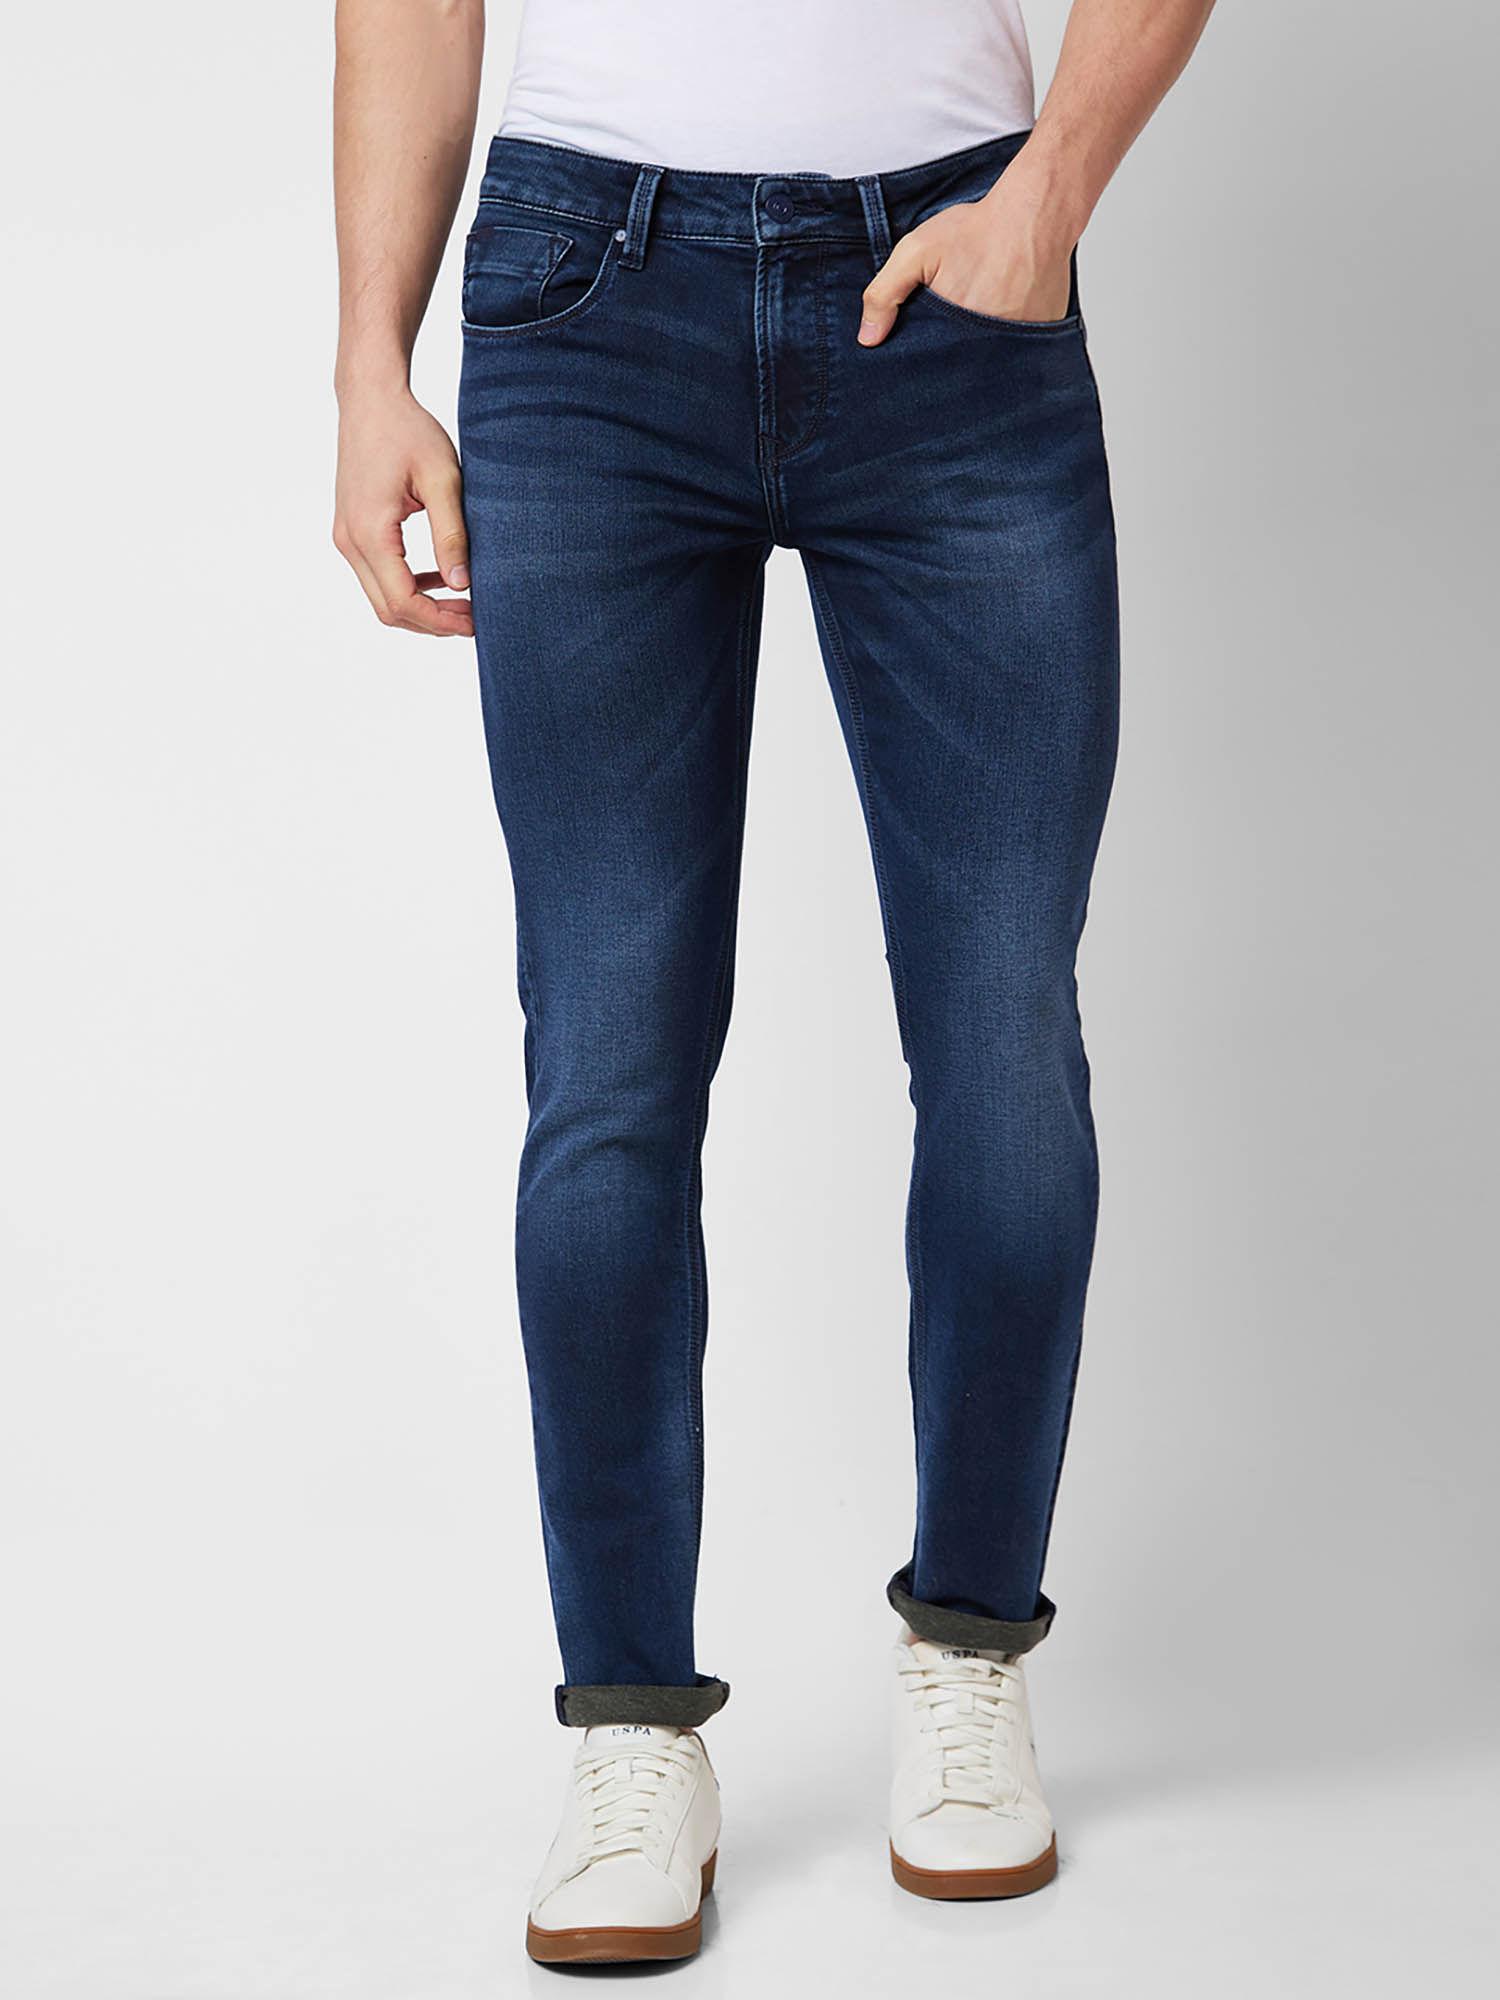 Low Rise Slim Fit Blue Jeans for Men